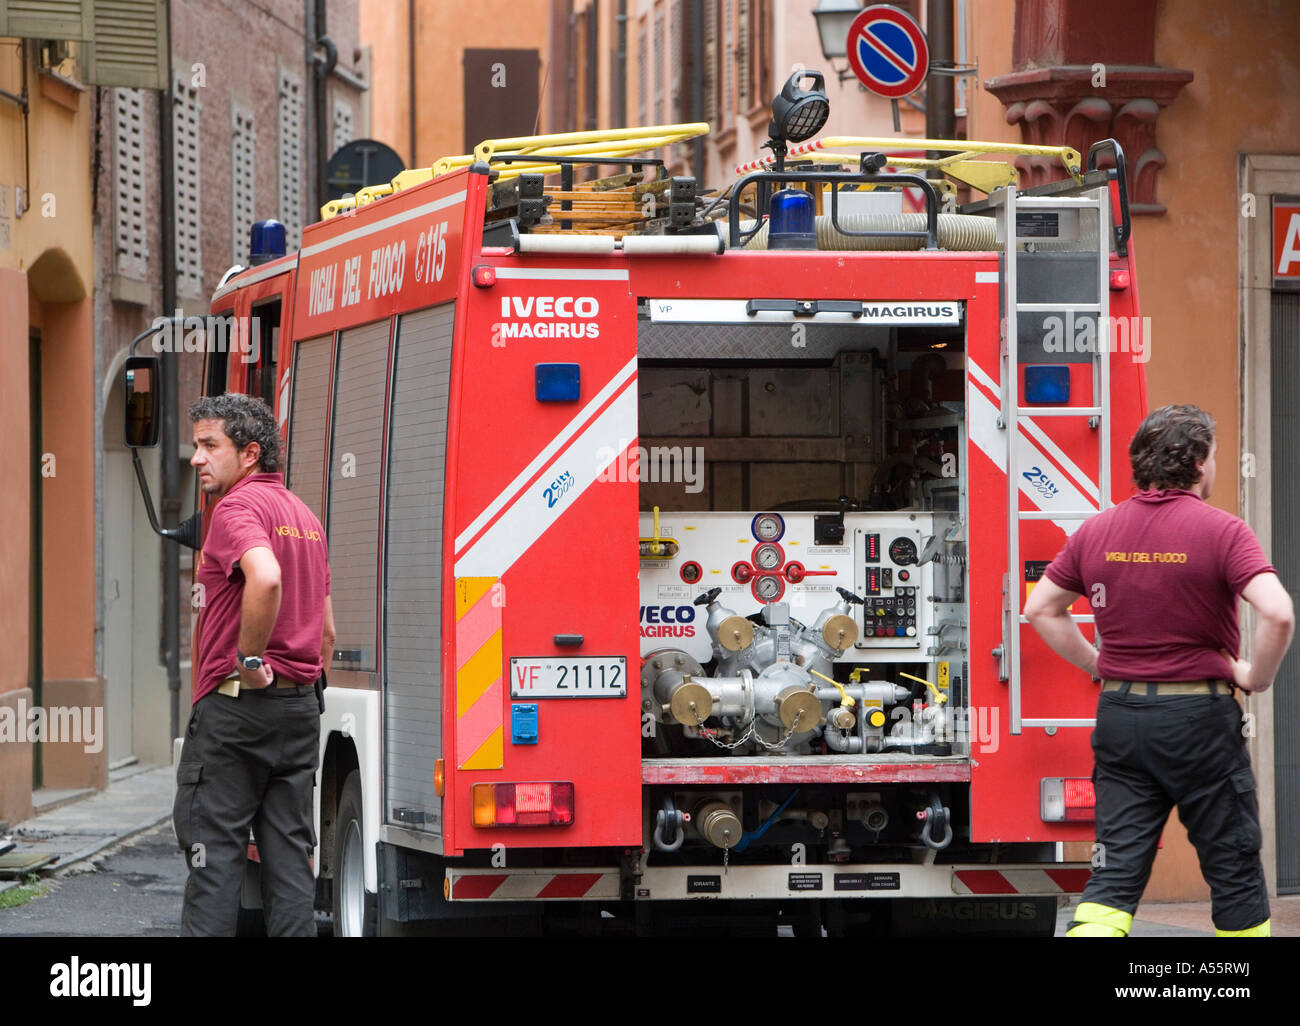 Italienische Feuerwehr Modena Emilia Romagna Italien Stockfotografie - Alamy